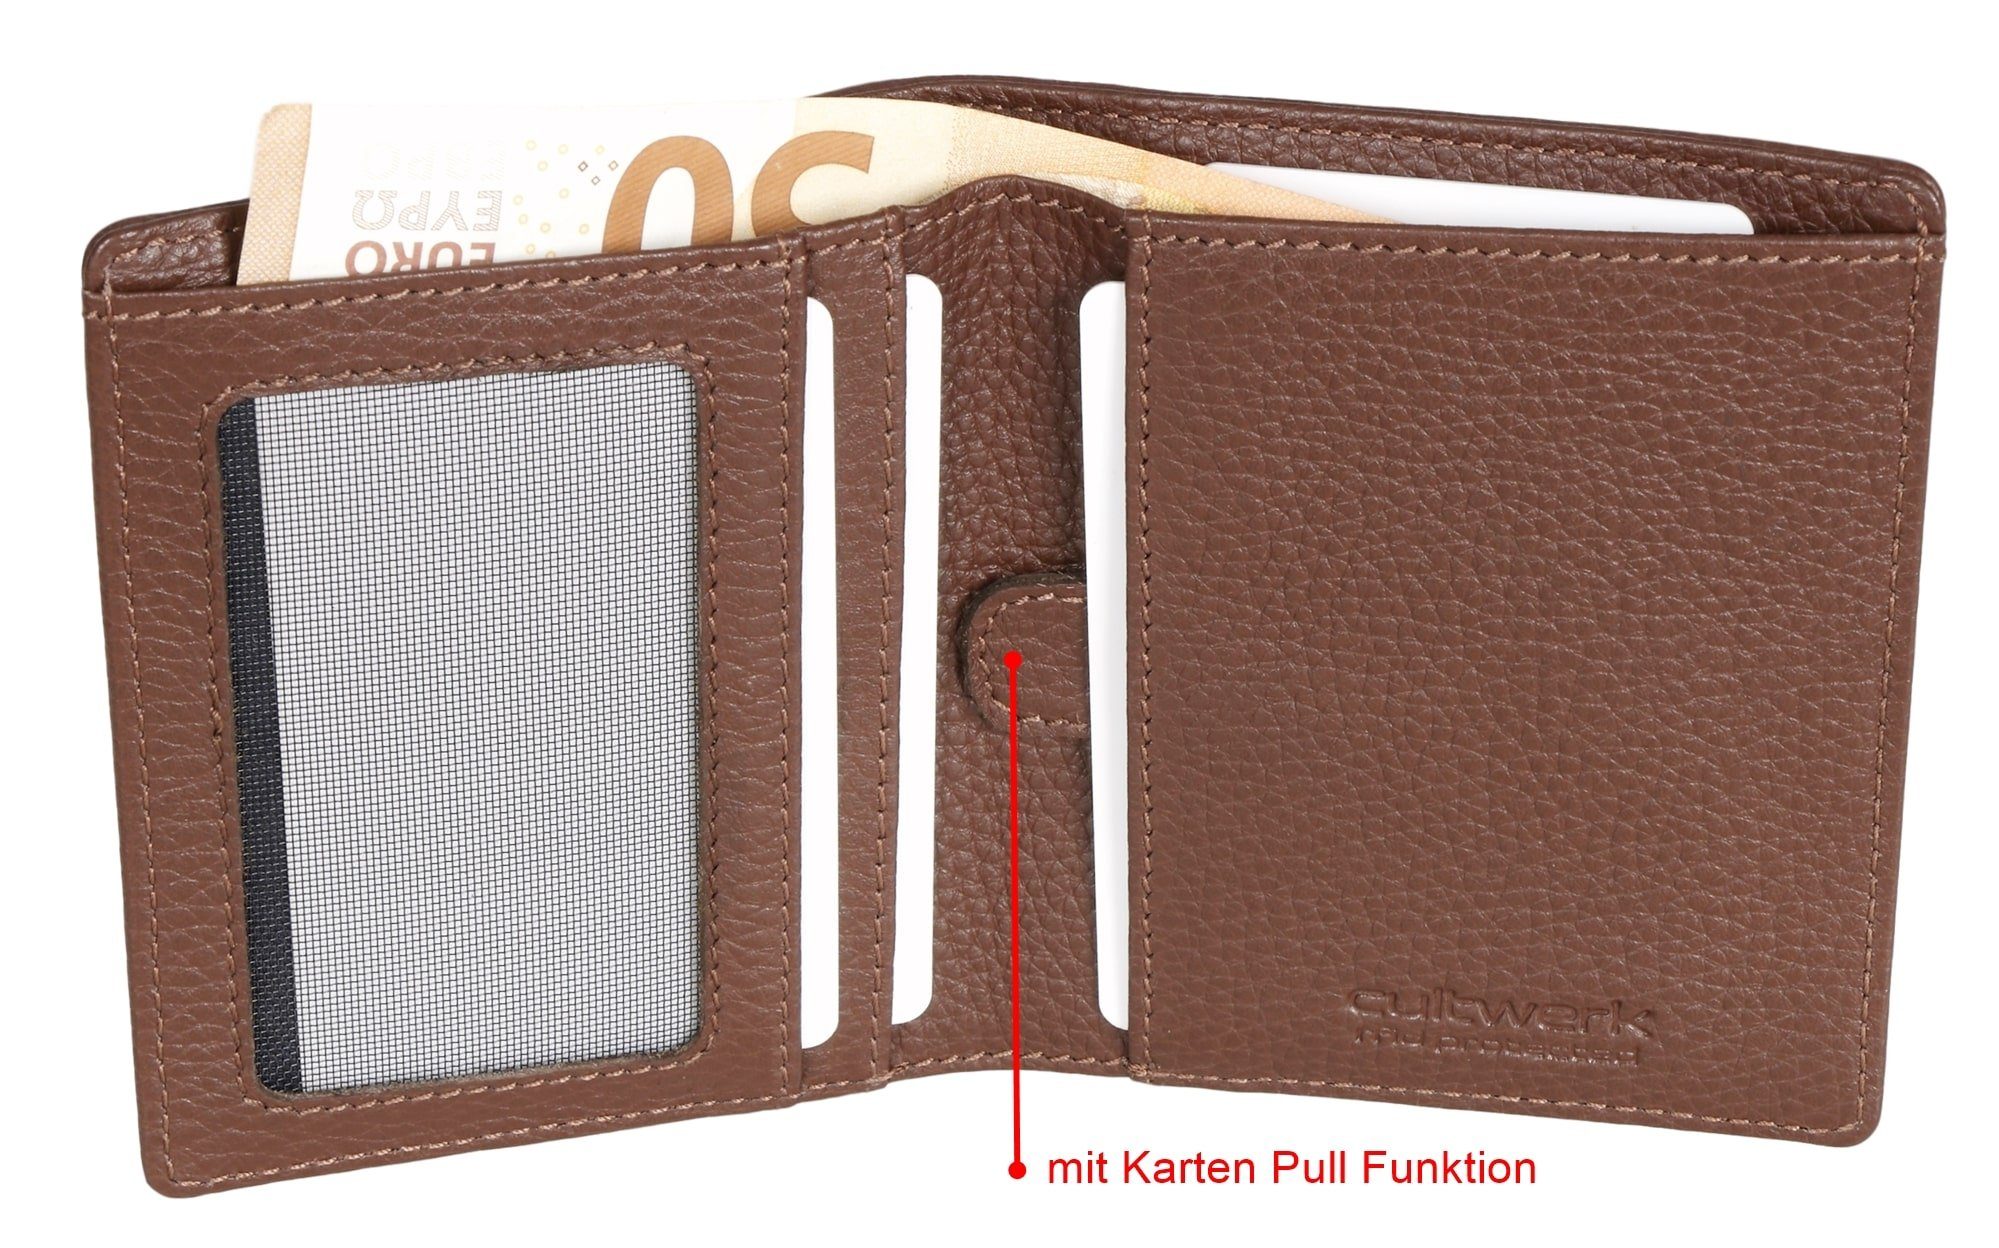 Brown Bear Geldbörse Cultwerk Modell Pull 5 Kartenfächern, Card für und Braun-Espresso Echtleder RFID-Schutz mit Herren aus mit Braun Farbe Funktion IV